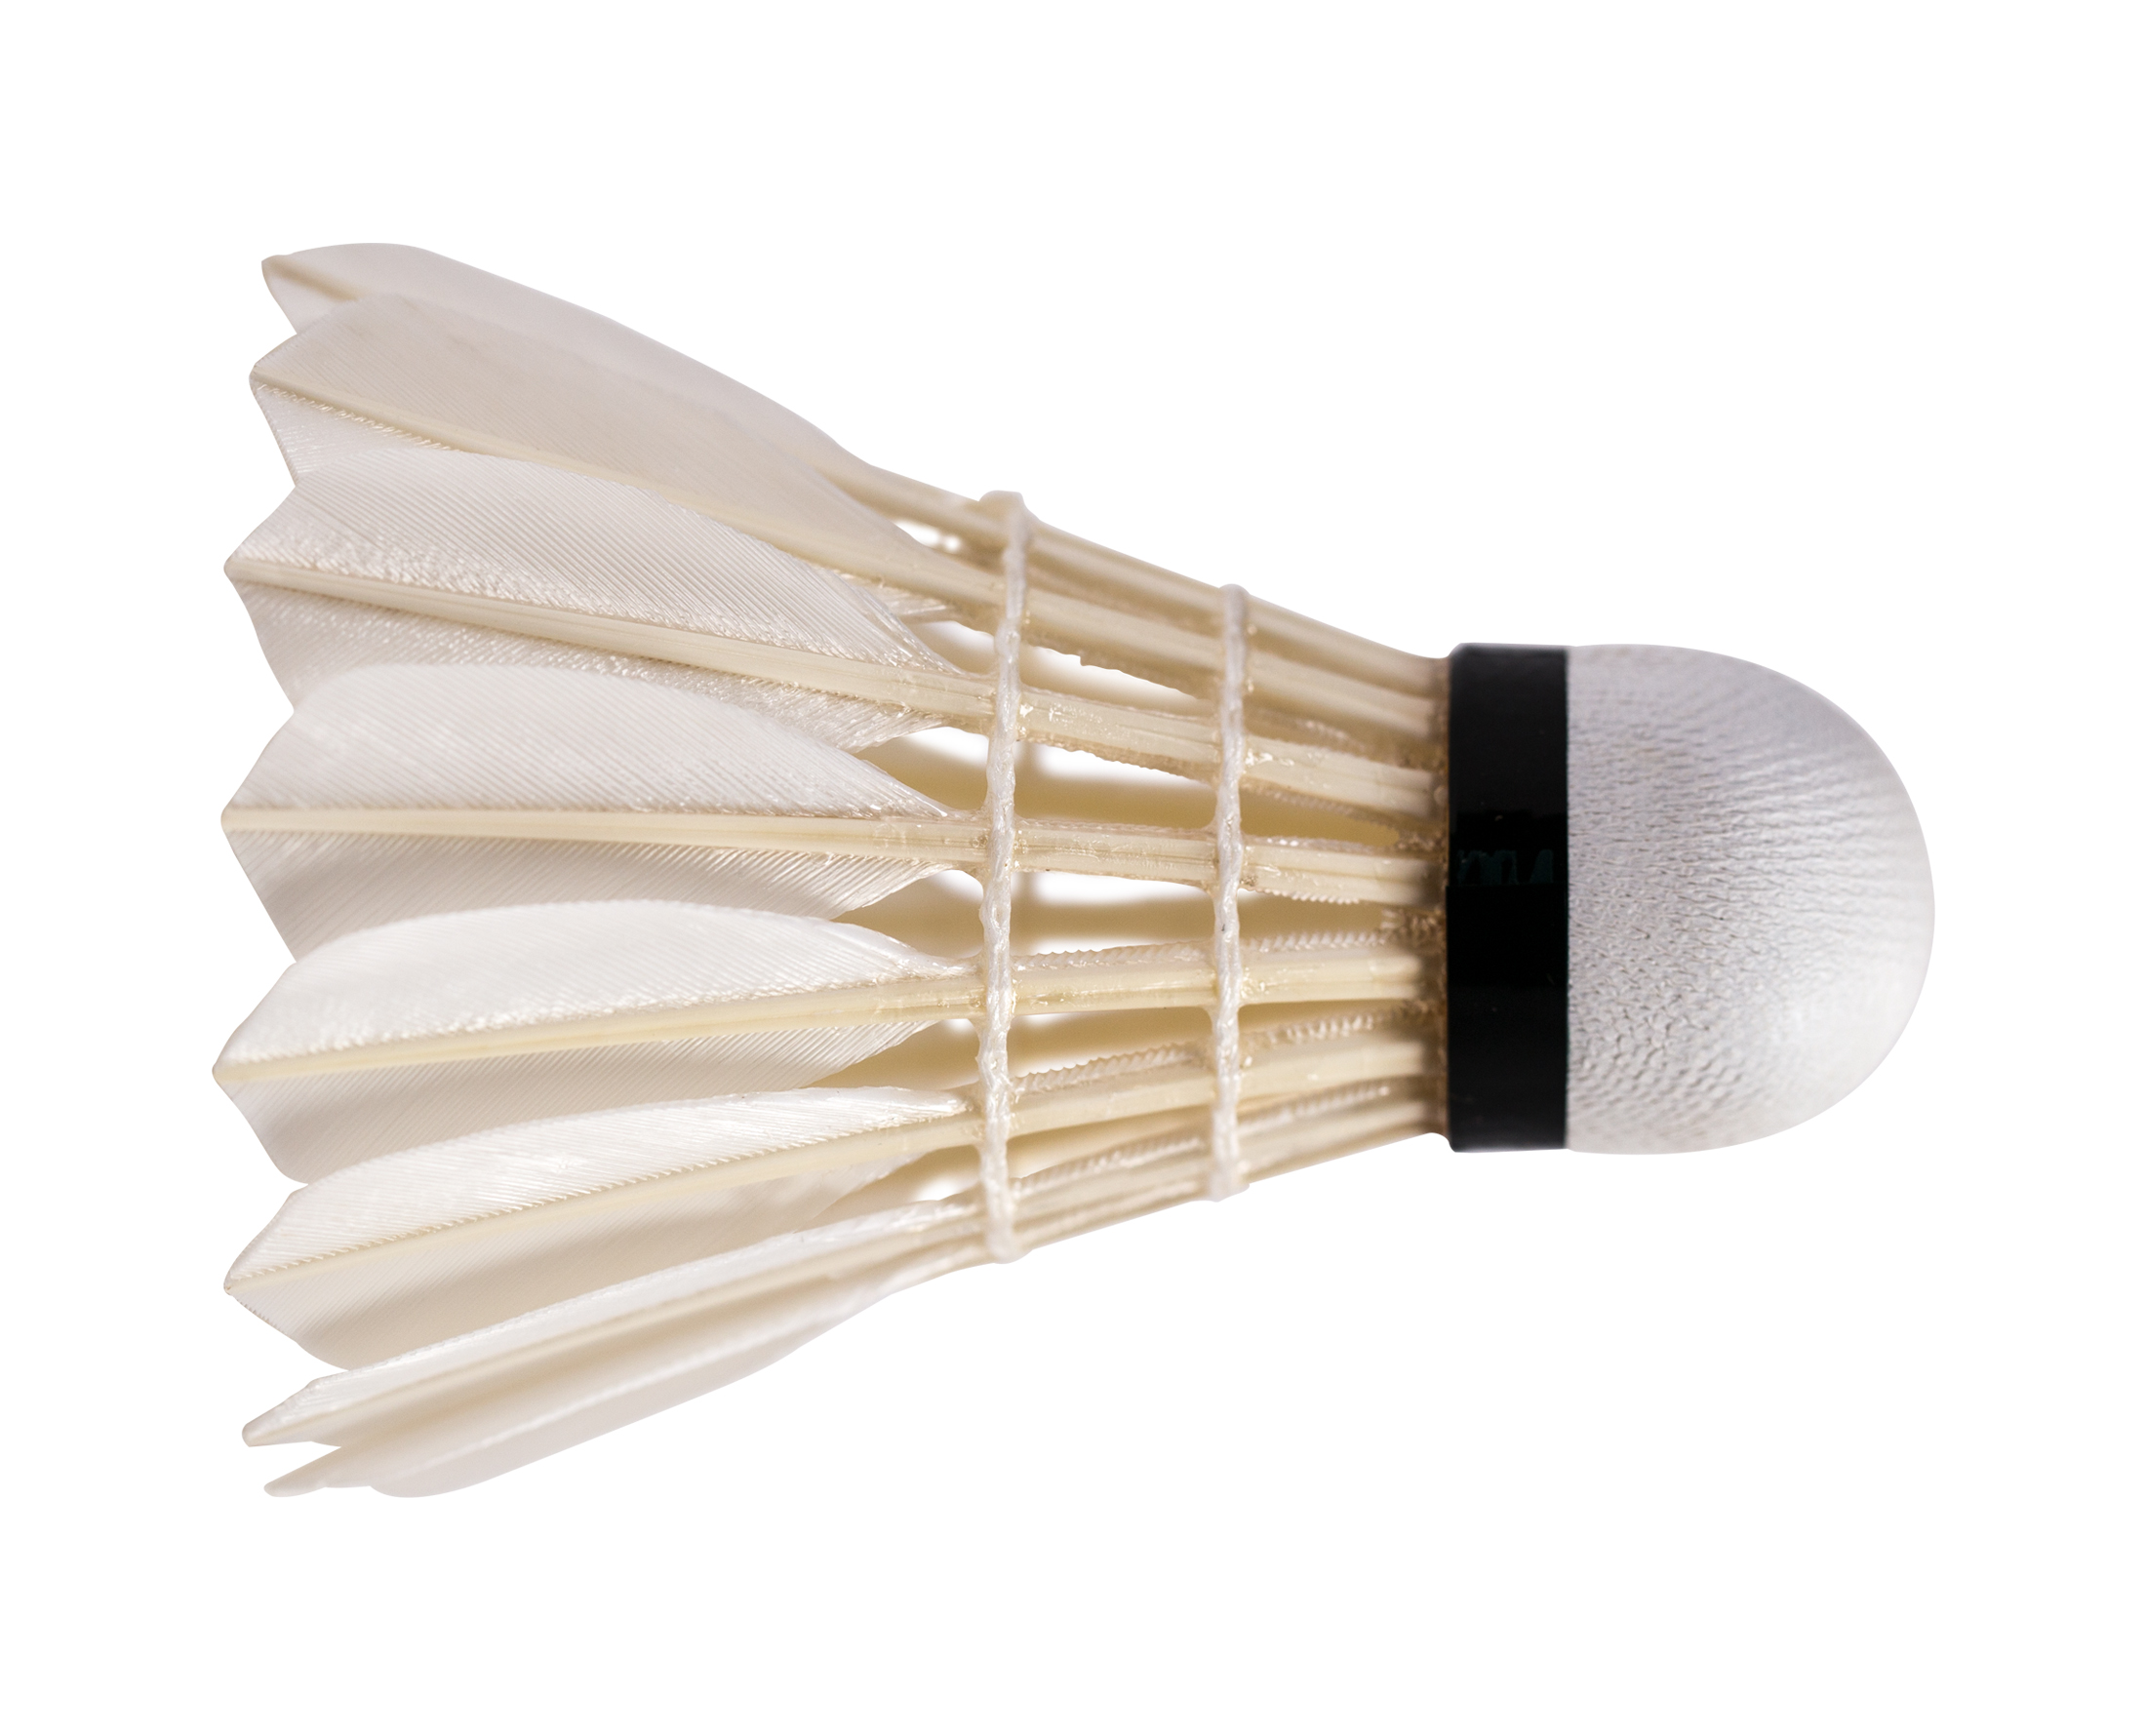 badminton birdie feathers